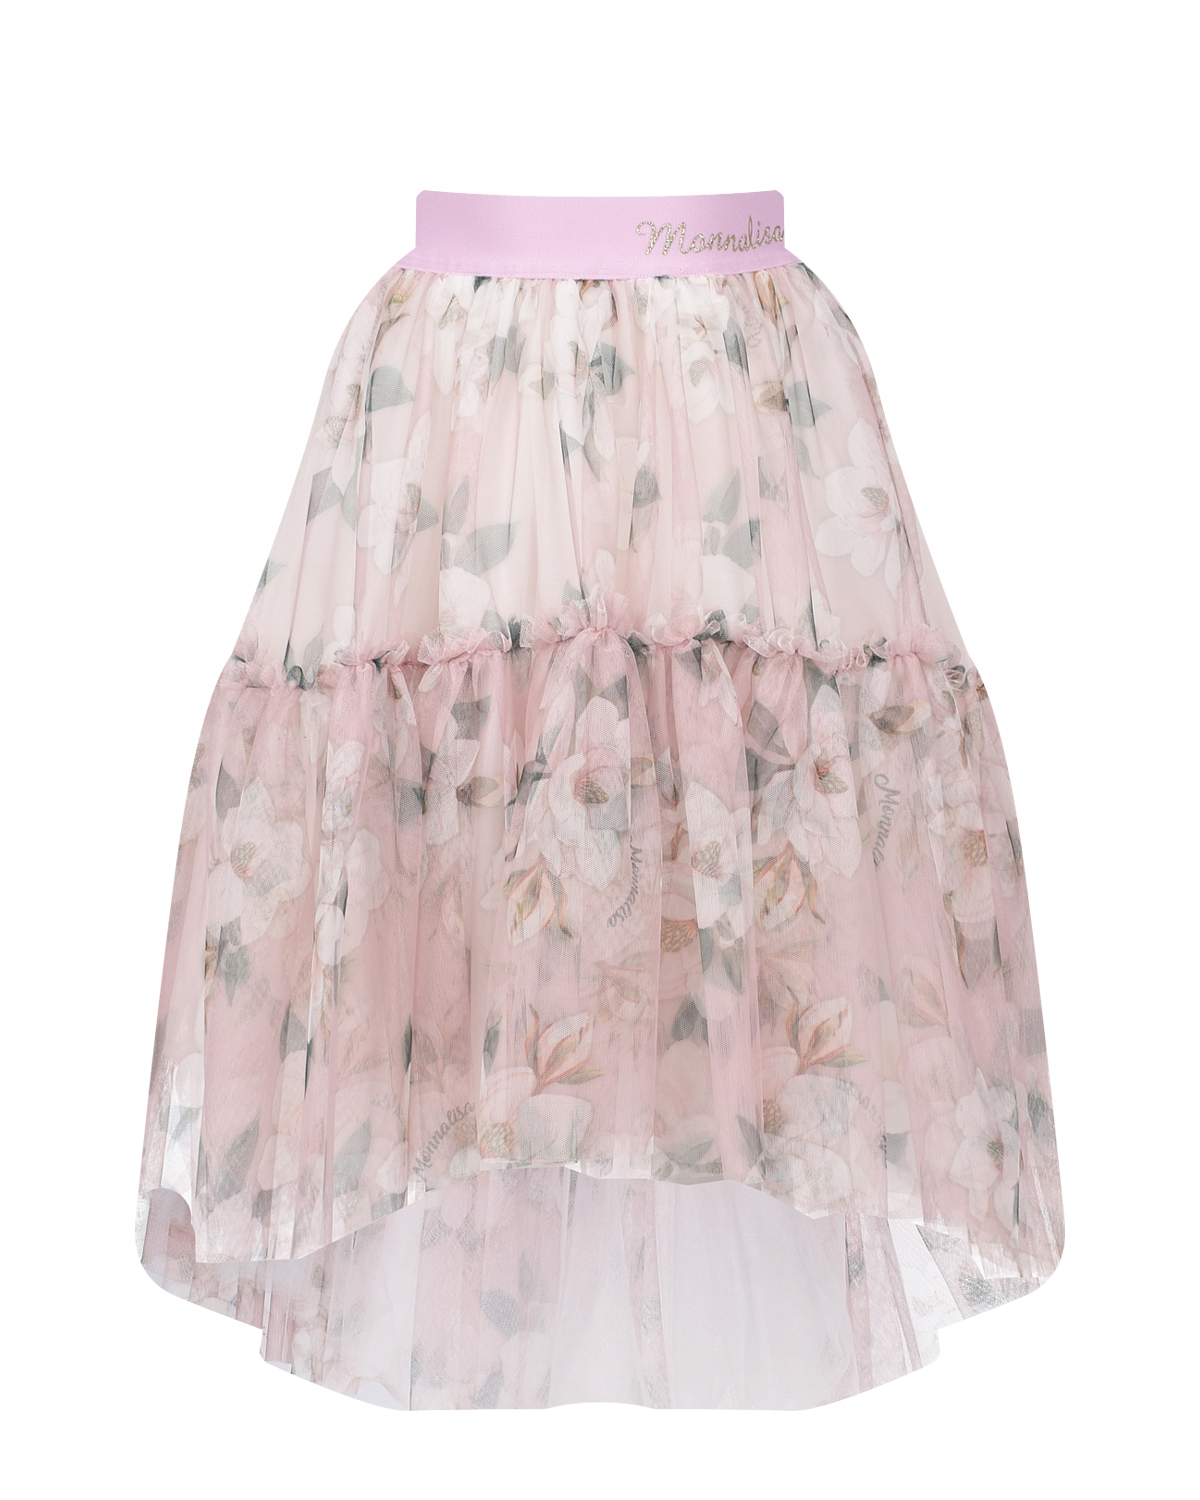 Розовая юбка с цветочным принтом Monnalisa бежевая юбка парео с принтом питон natayakim